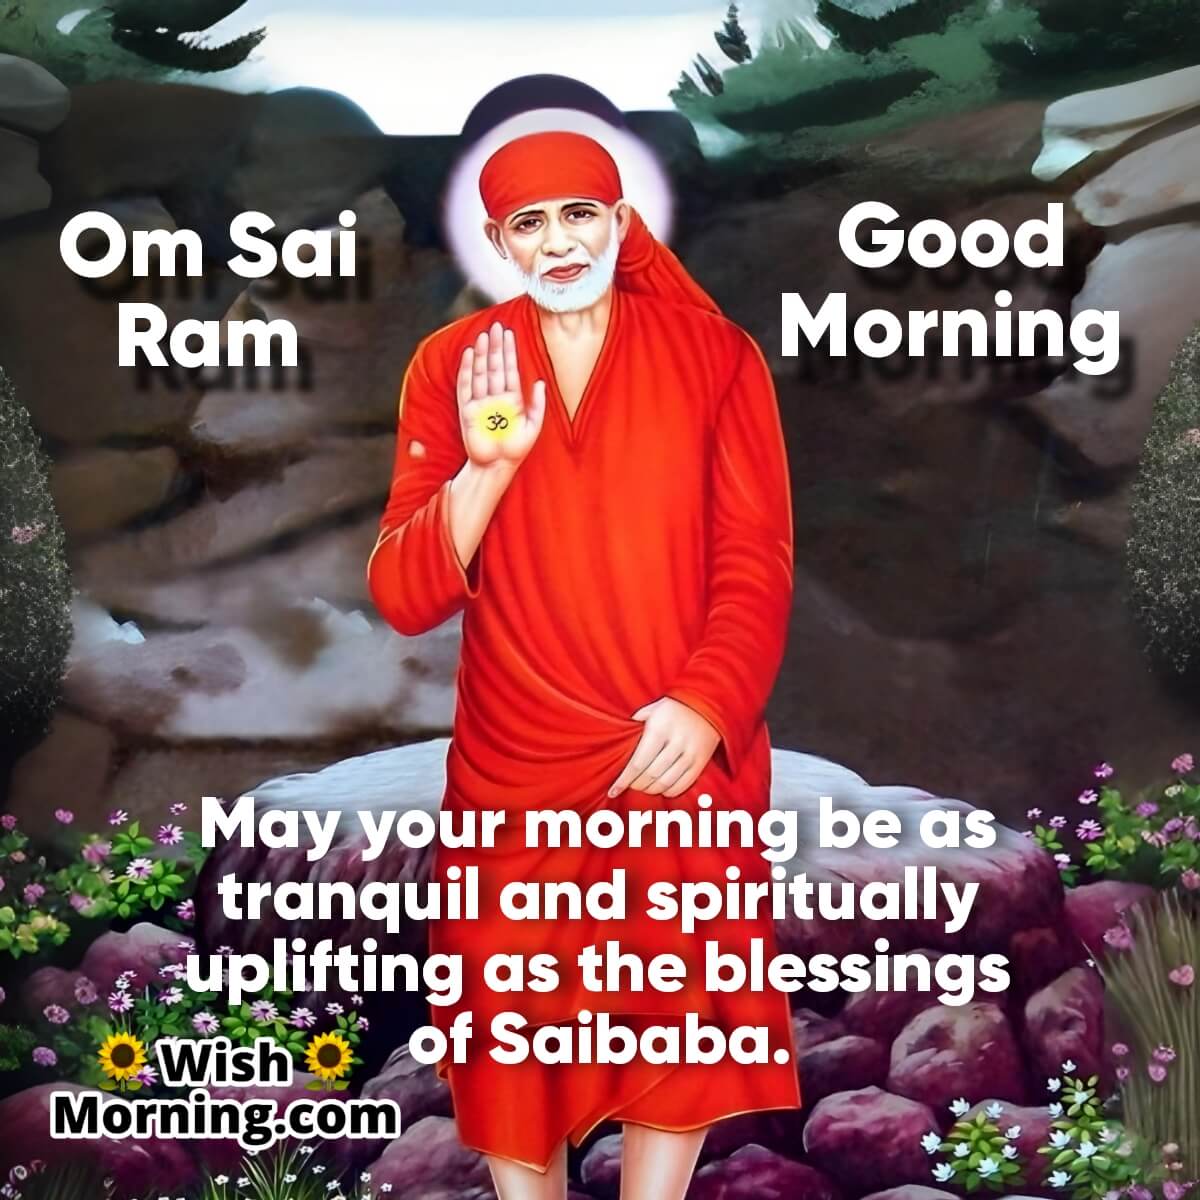 Good Morning Saibaba Wishes